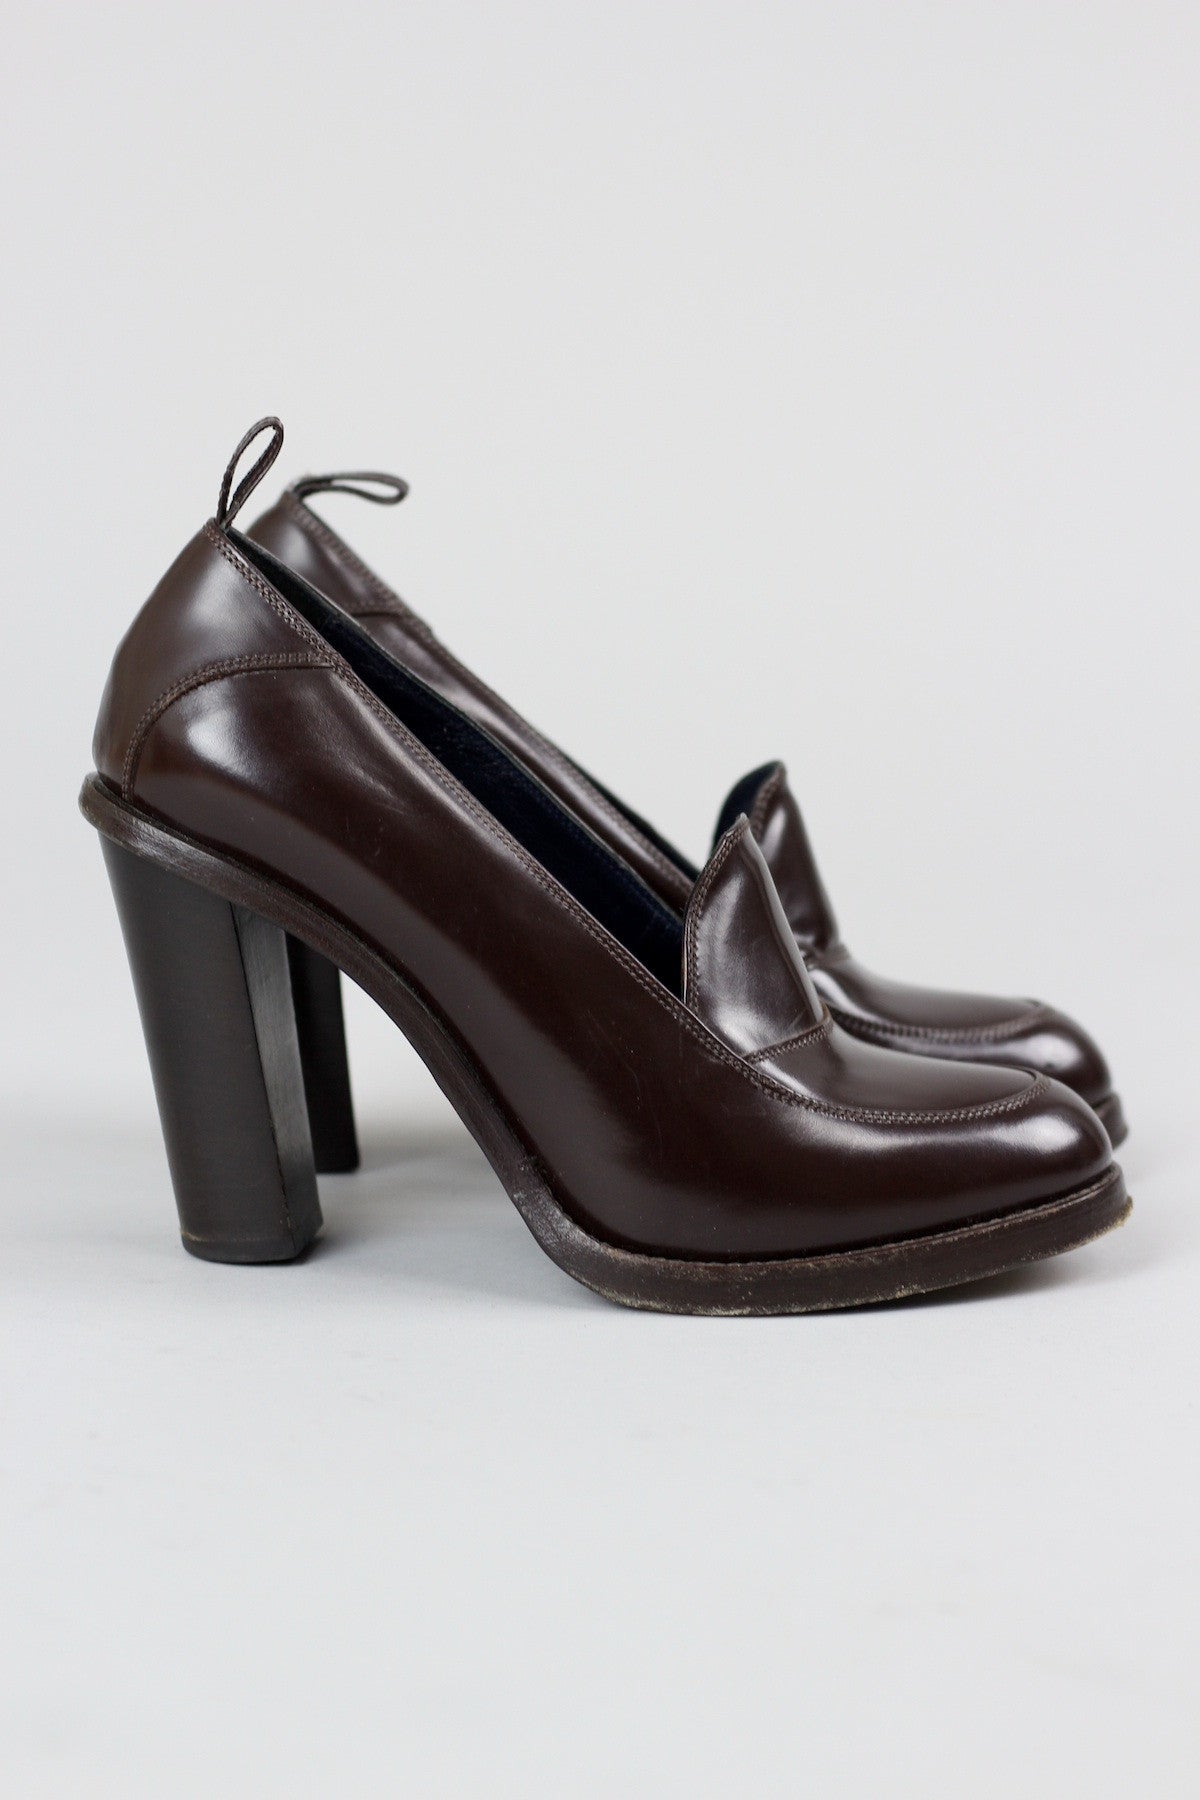 Vintage 40s Inspired Oxblood Patent Platform Loafers